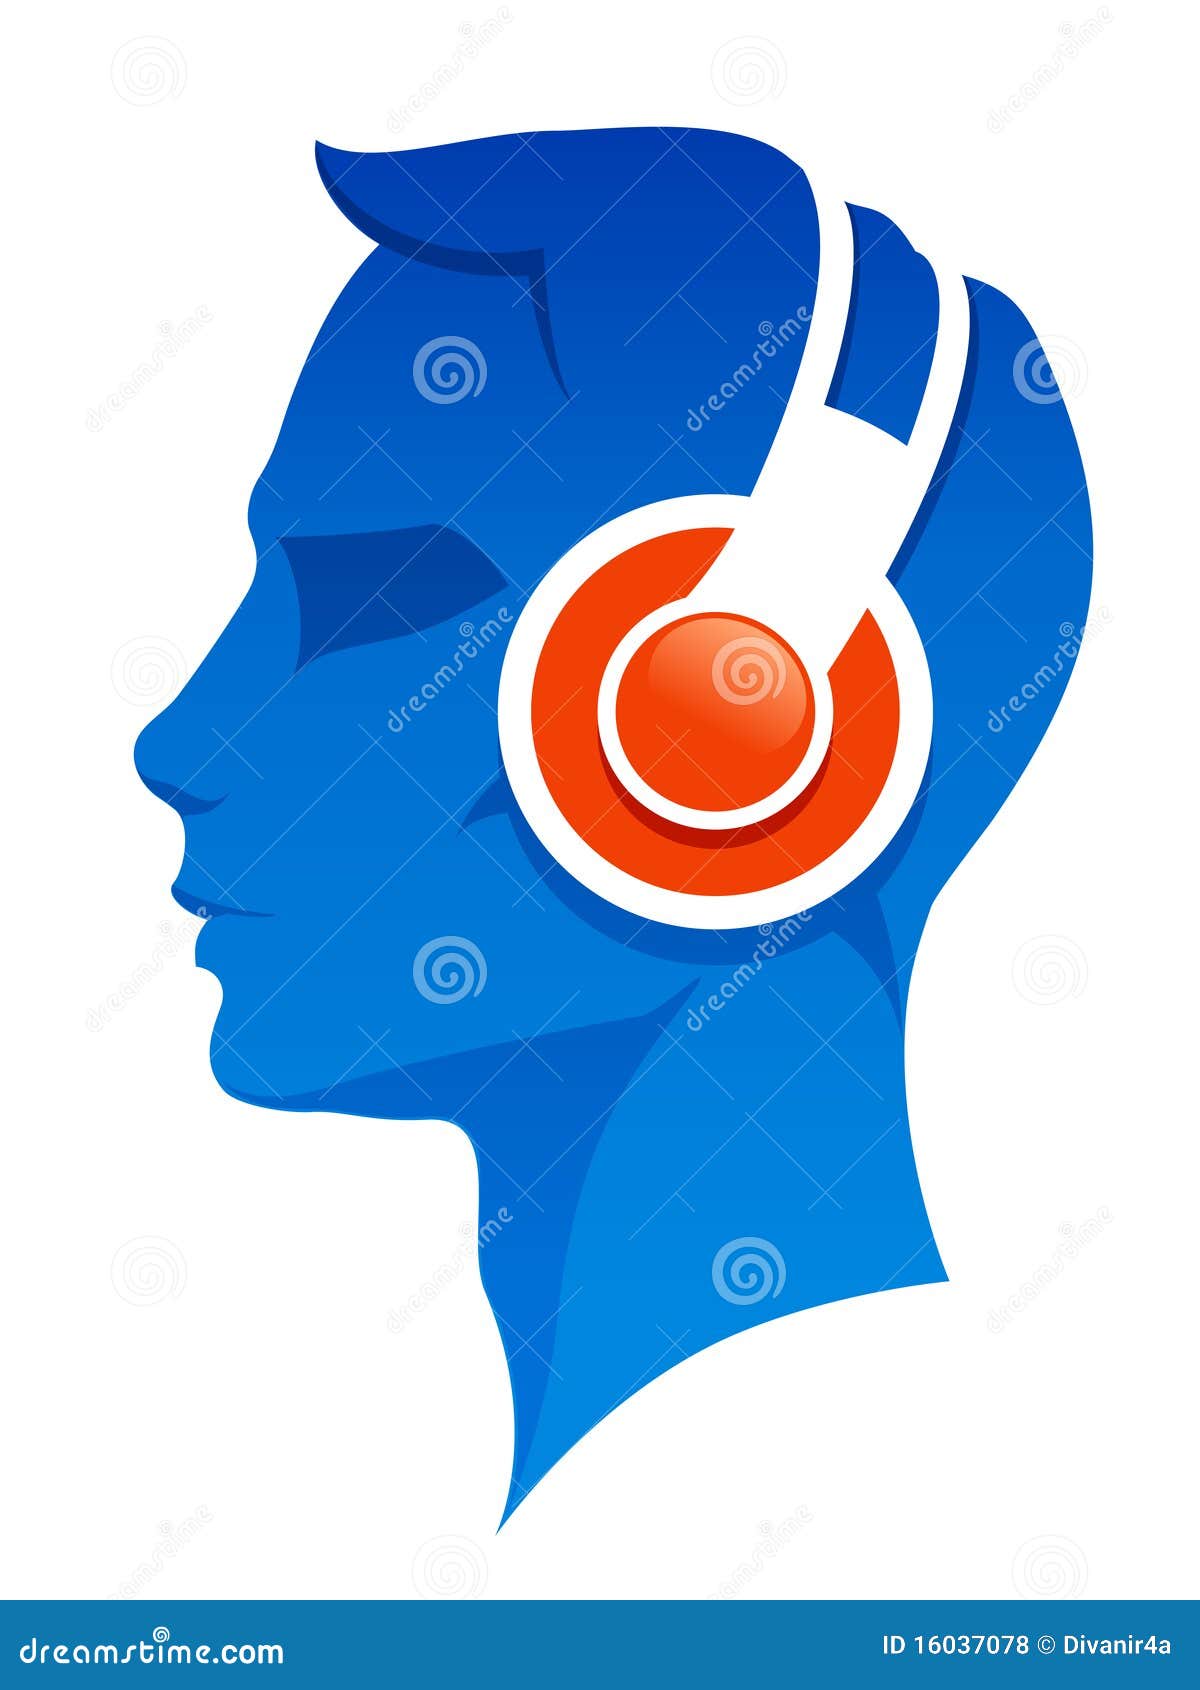 man with headphones